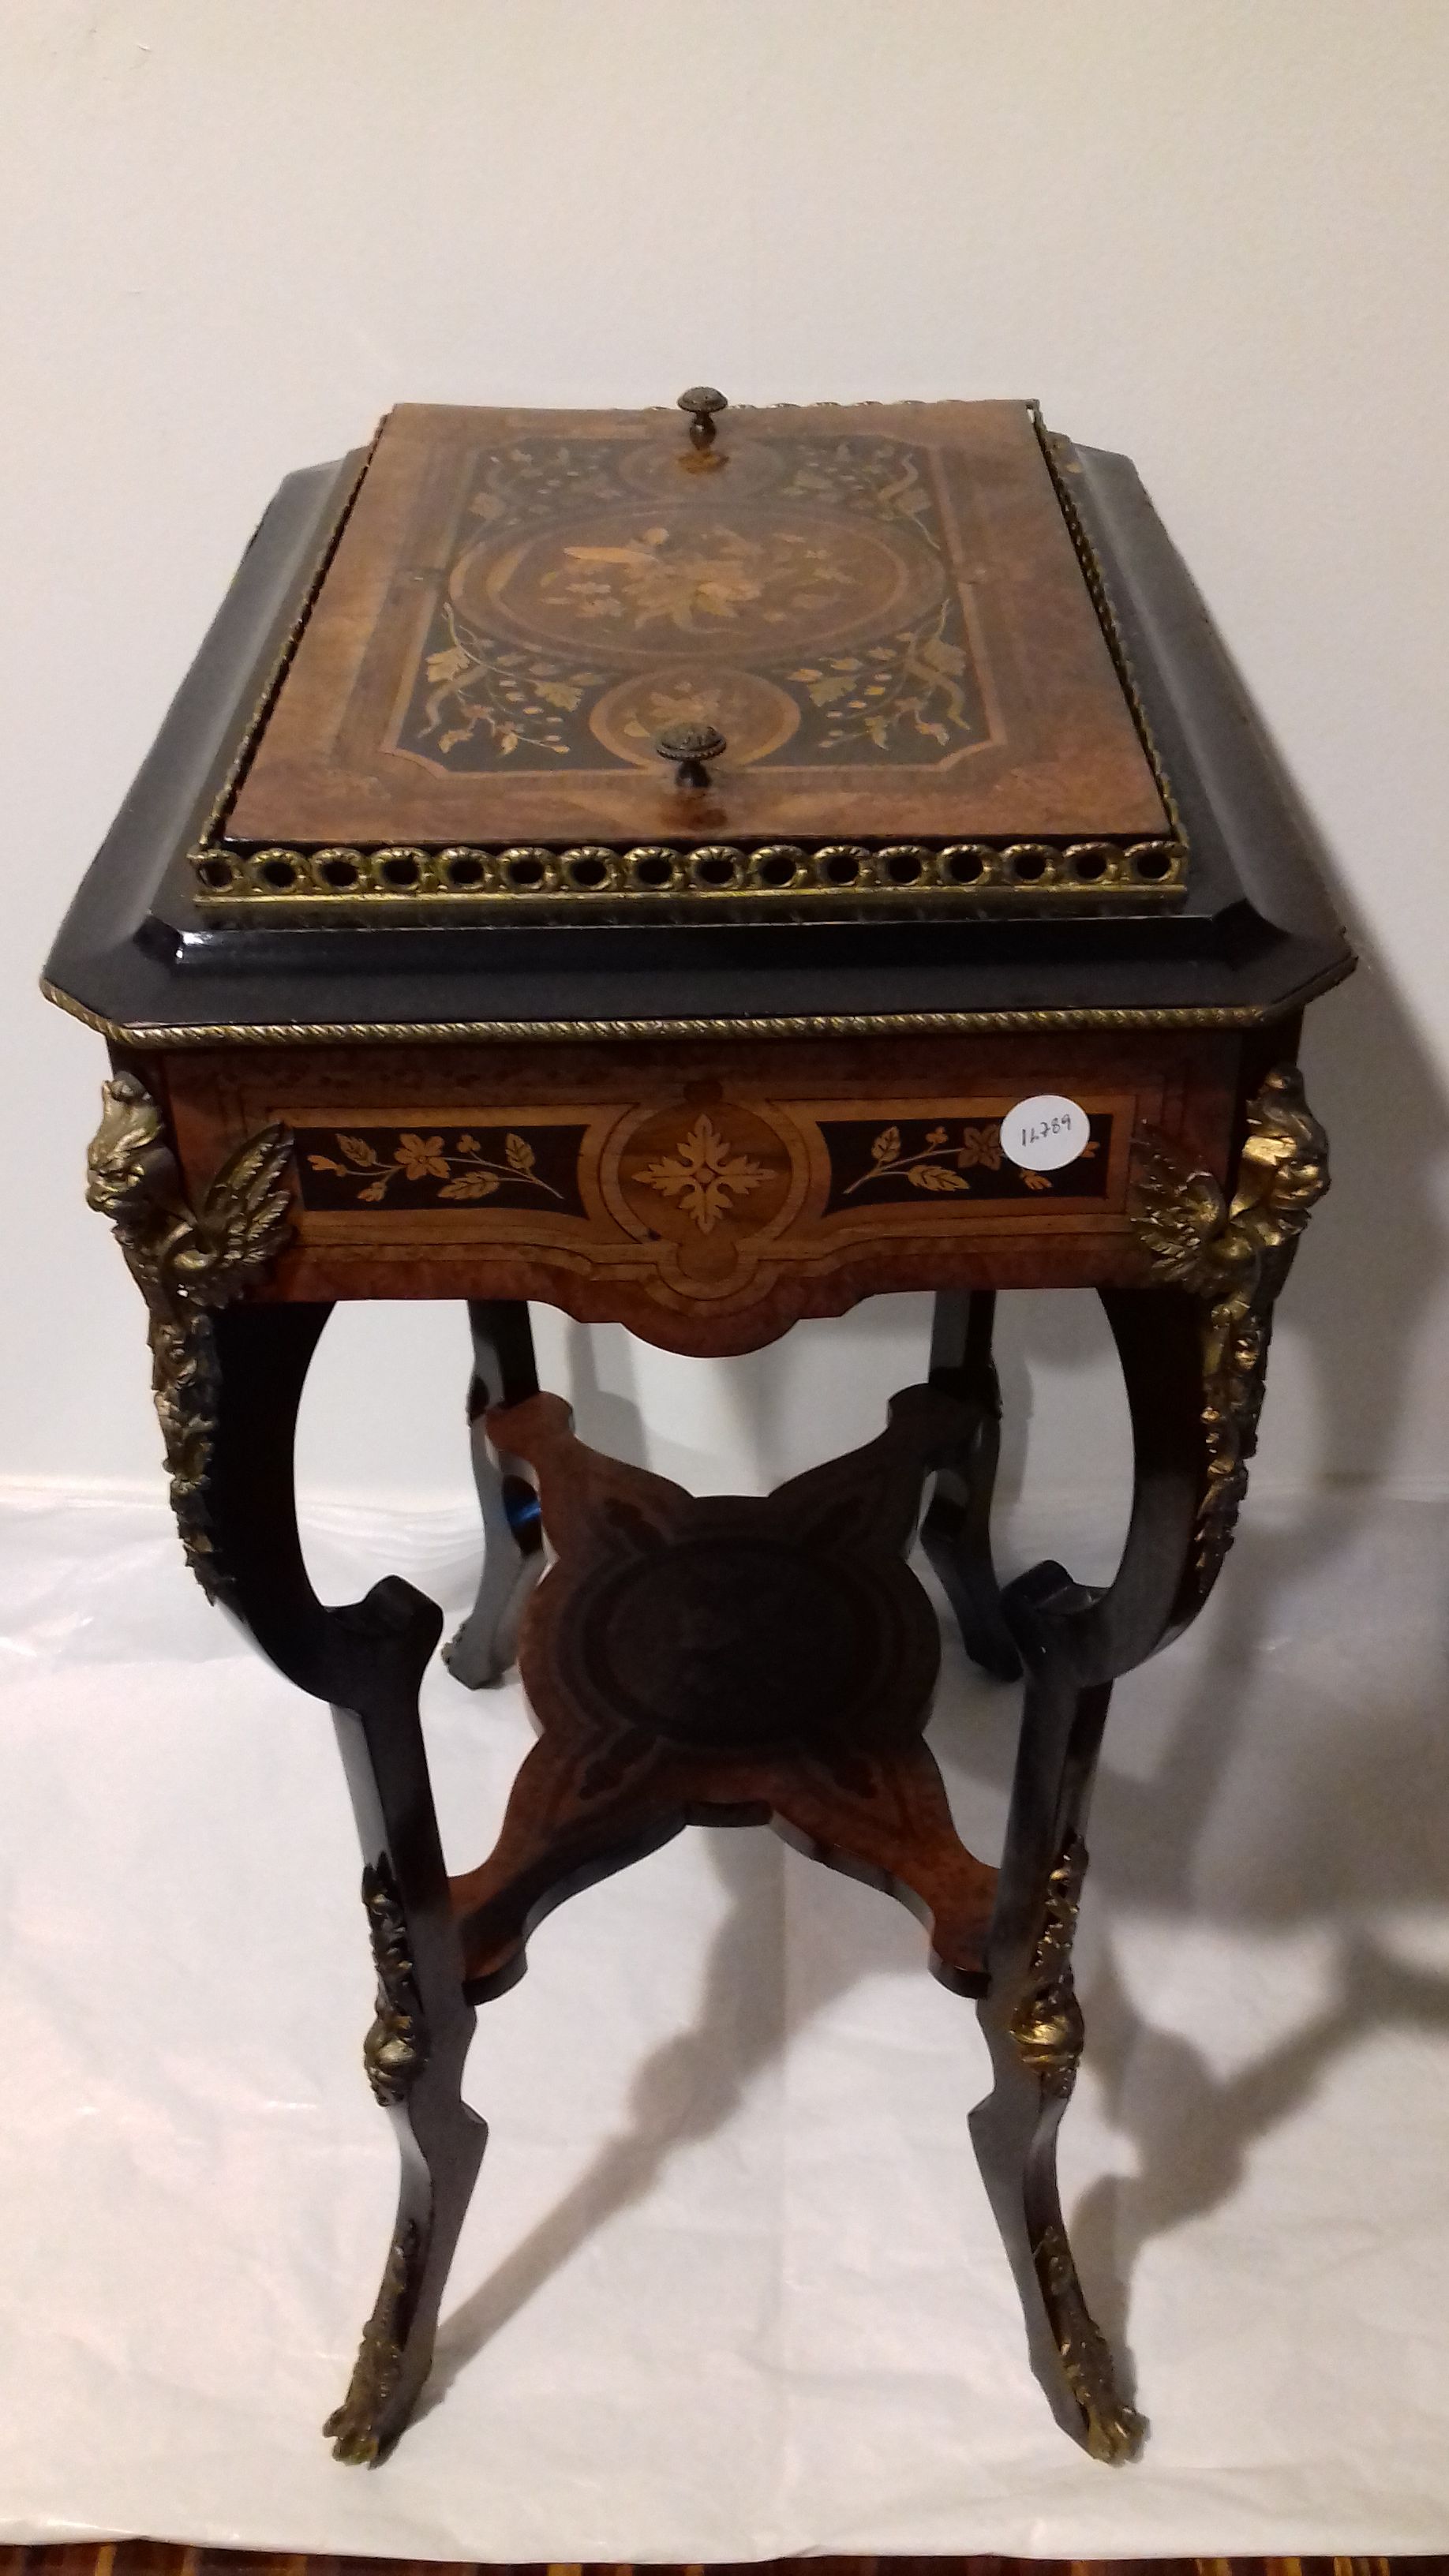 Antico tavolino francese porta ghiaccio del 1800 con intarsi e bronzi